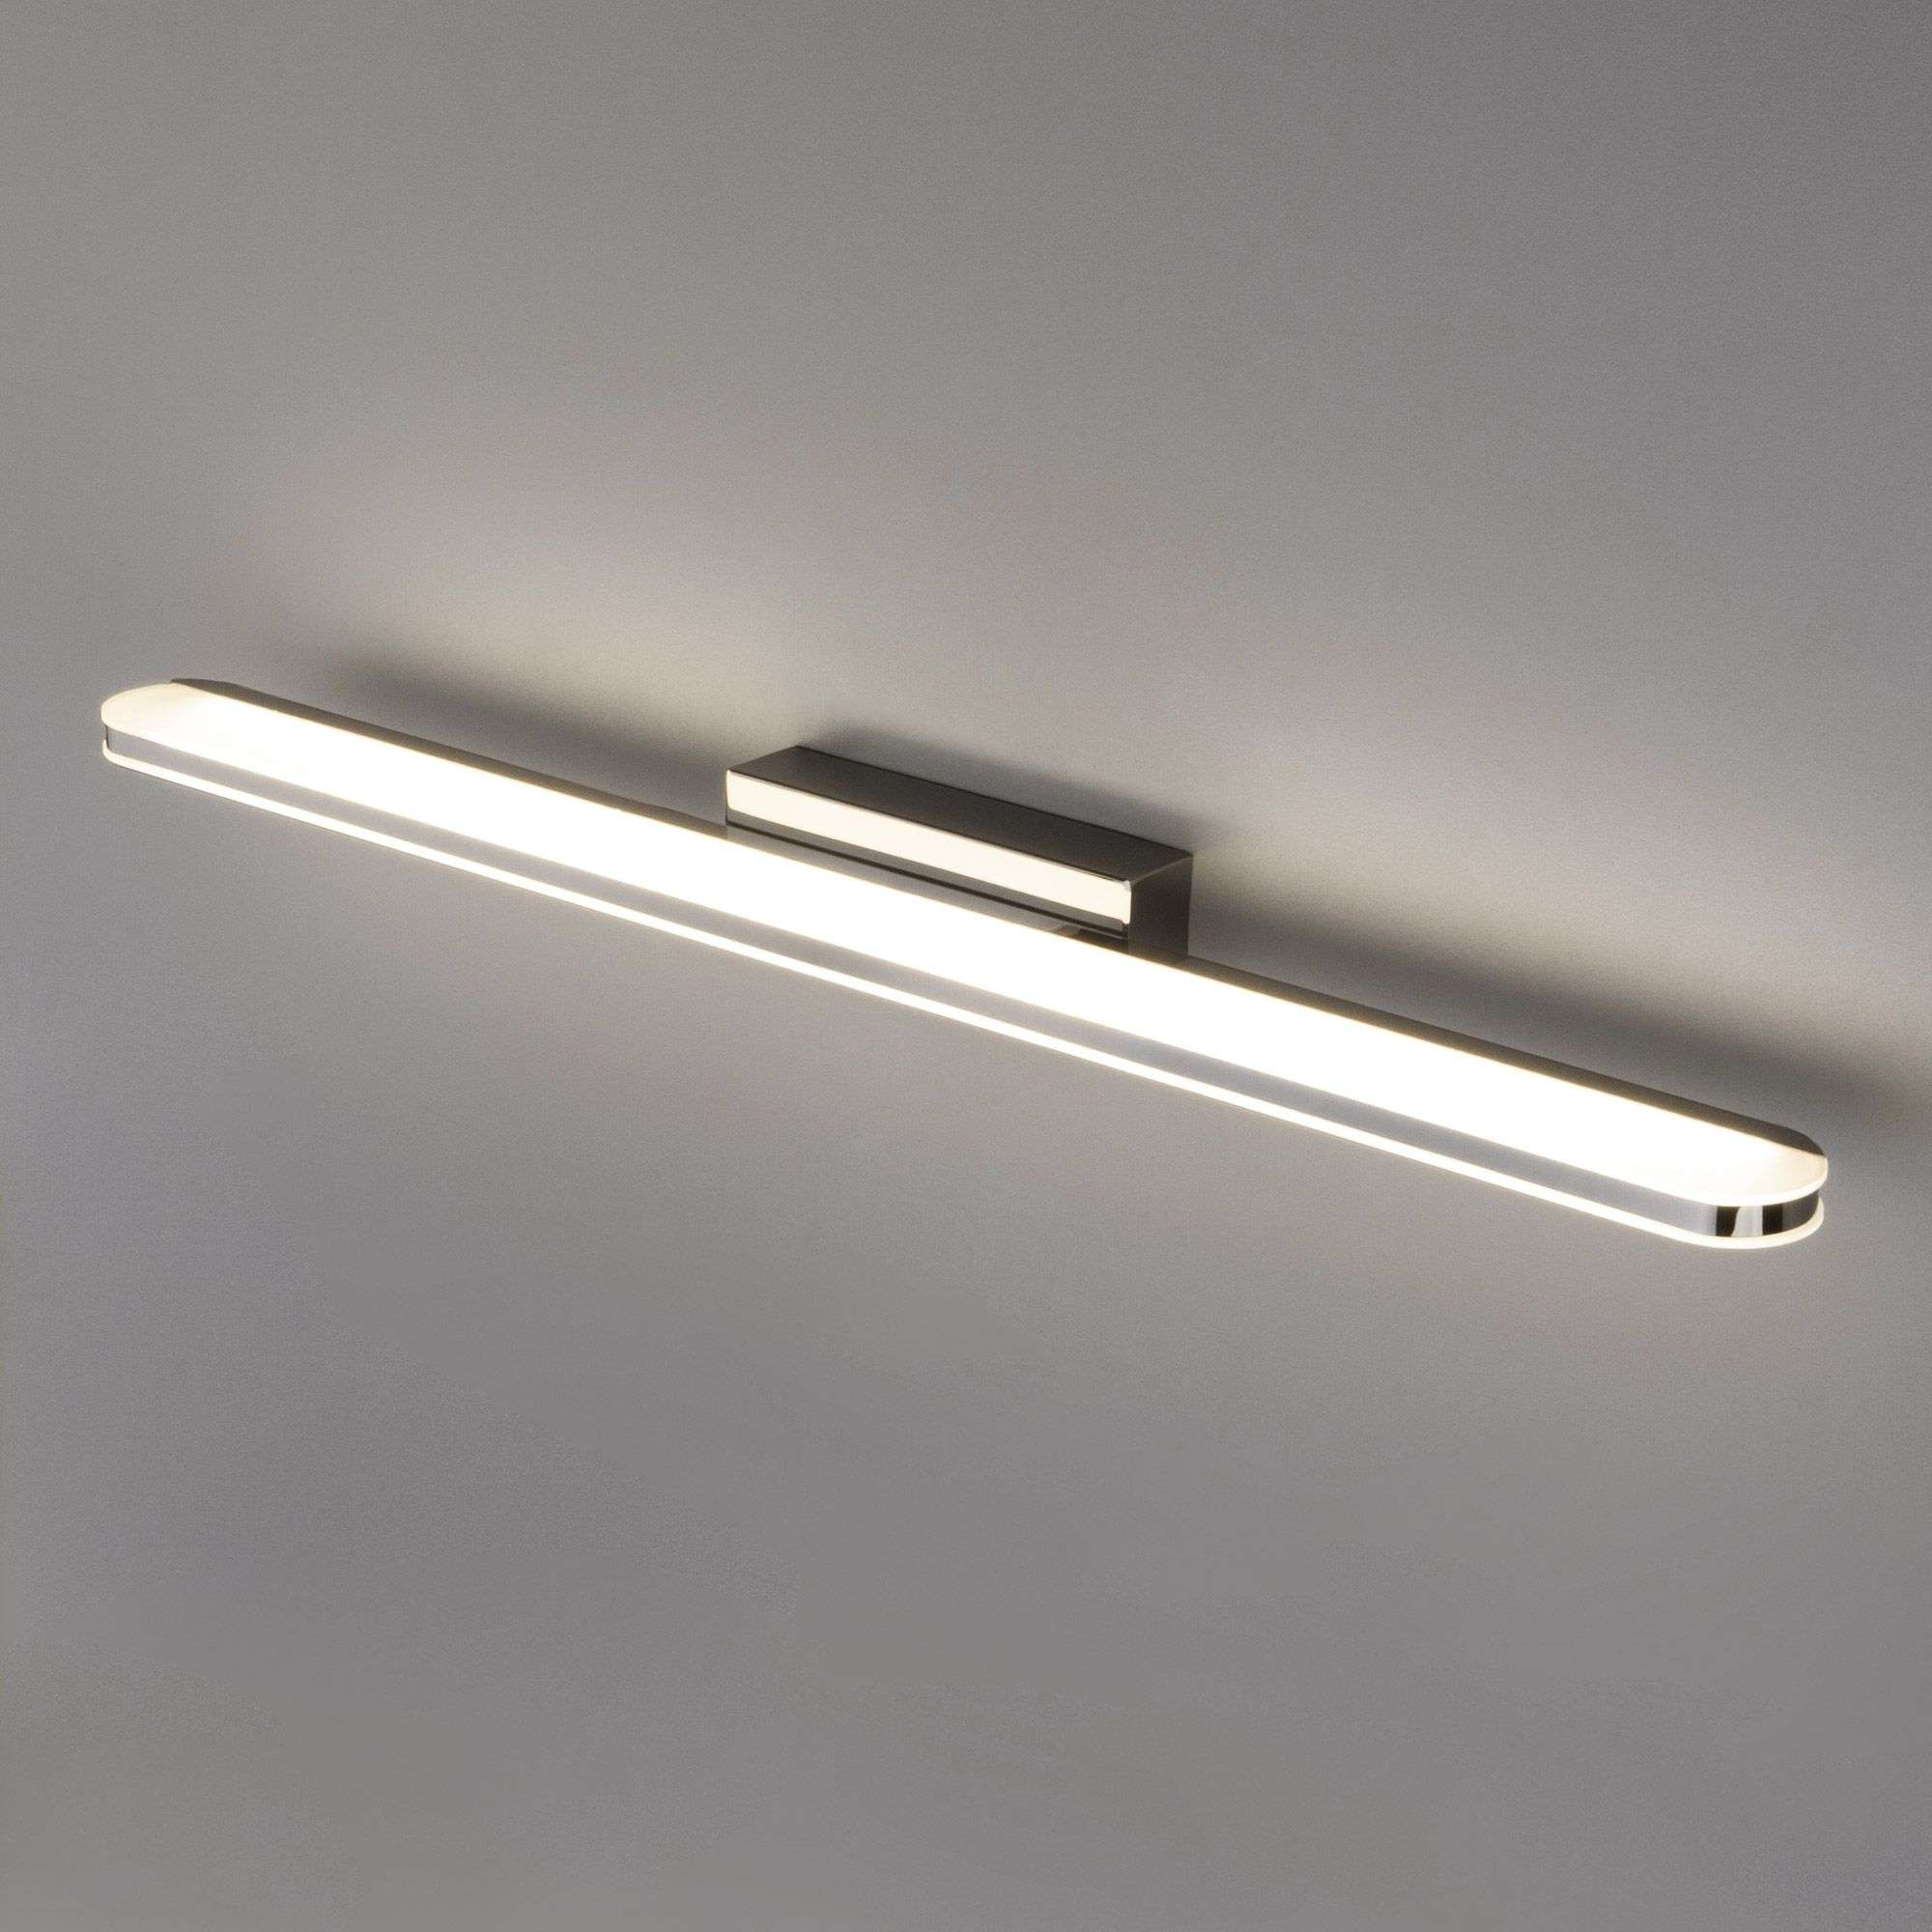 Настенный светодиодный светильник Tersa MRL LED 1080. Фото 2